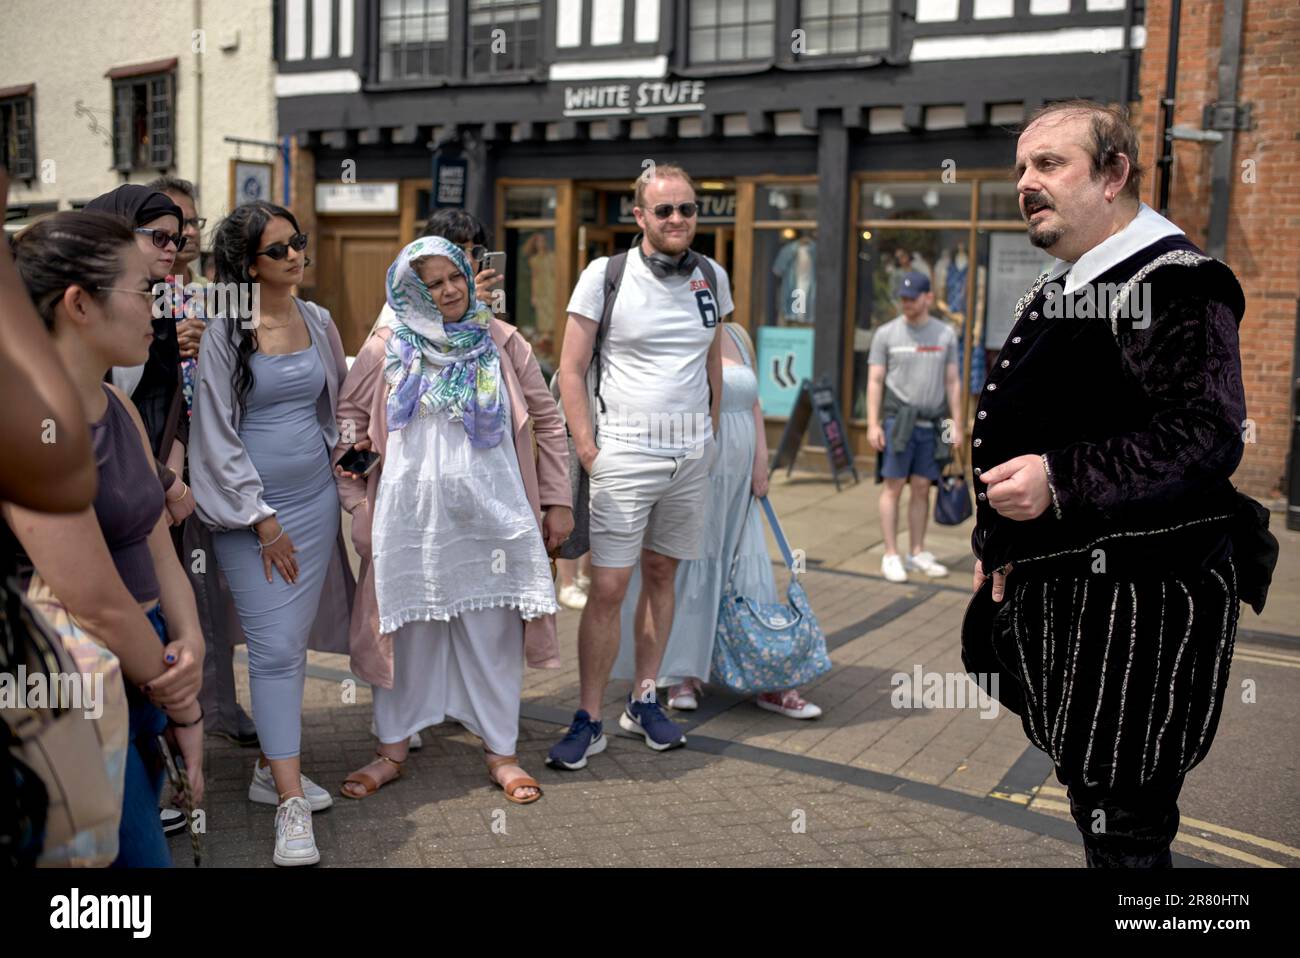 Reiseleiter gekleidet als William Shakespeare in traditionellem Tudor Kostüm. Stratford-upon-Avon, England, Großbritannien Stockfoto